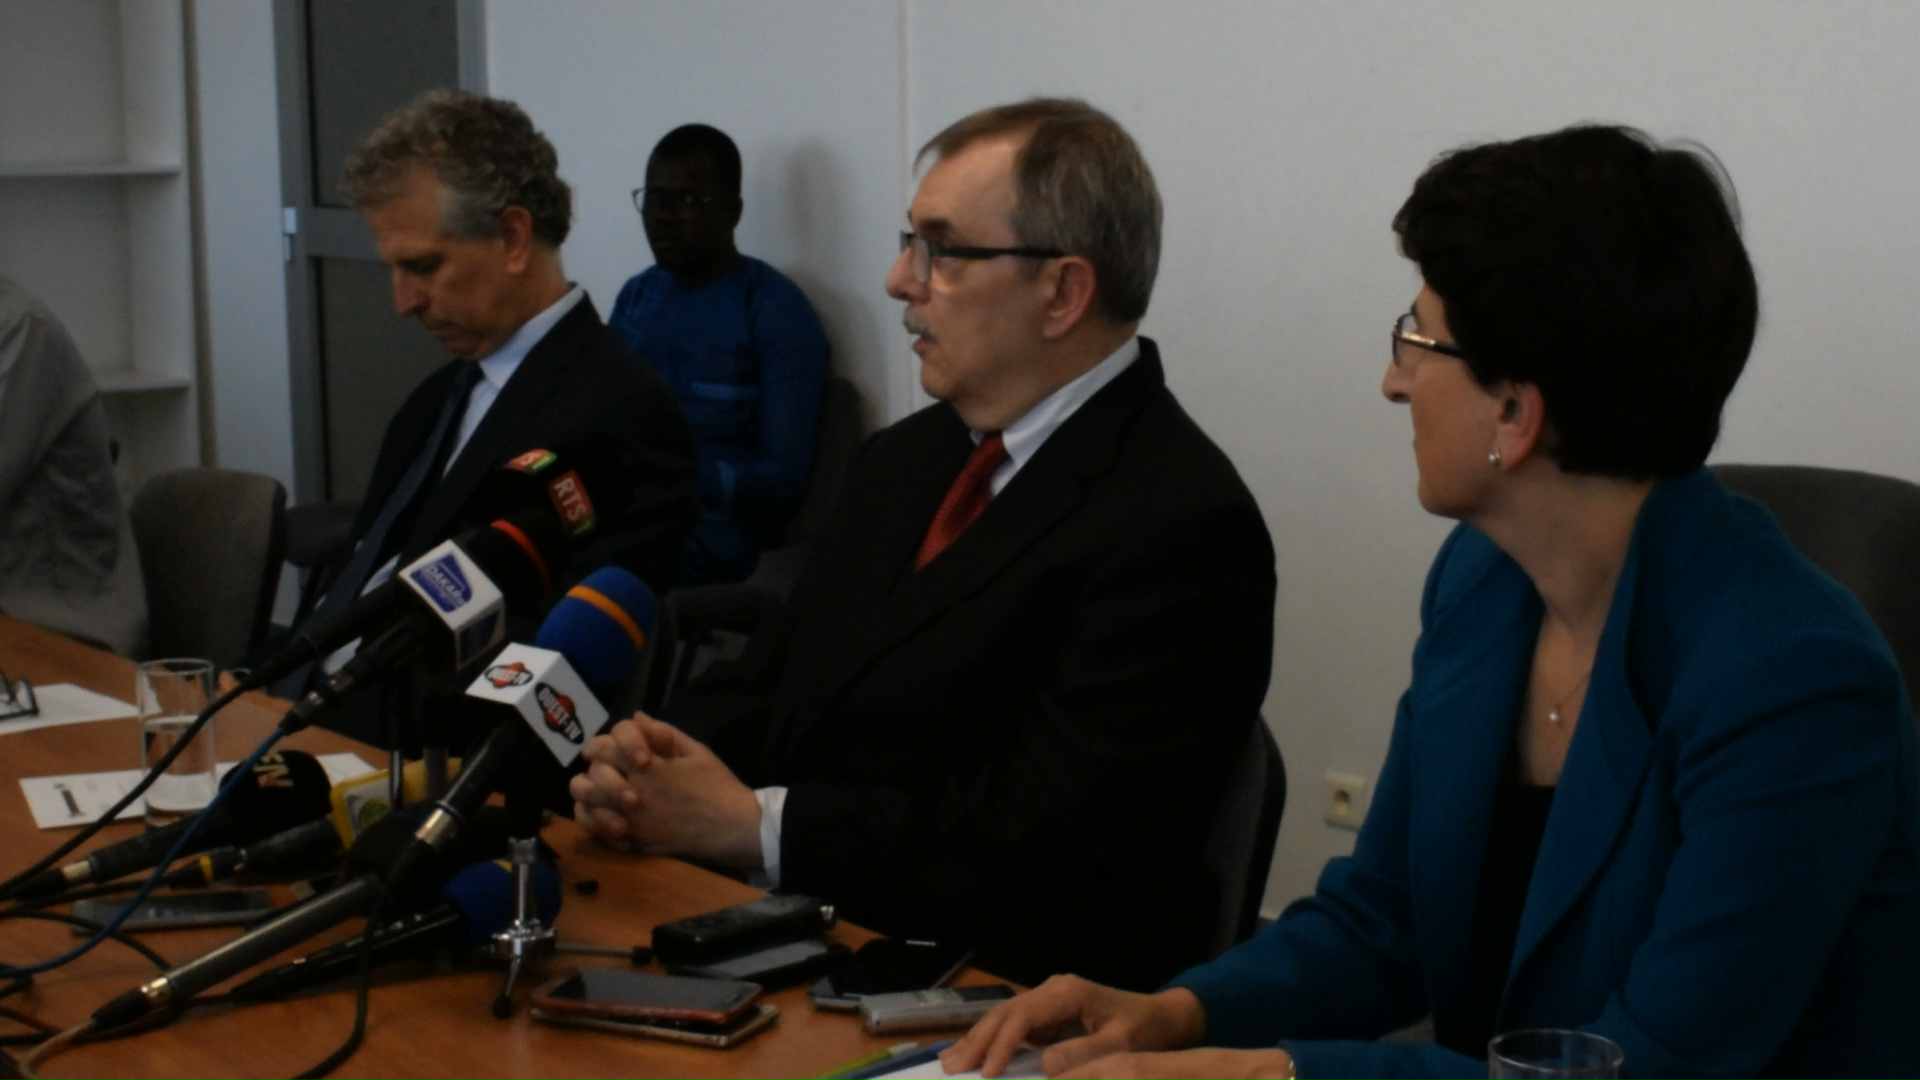 VIDEO - Les services du FMI achèvent une mission de revue au Sénégal